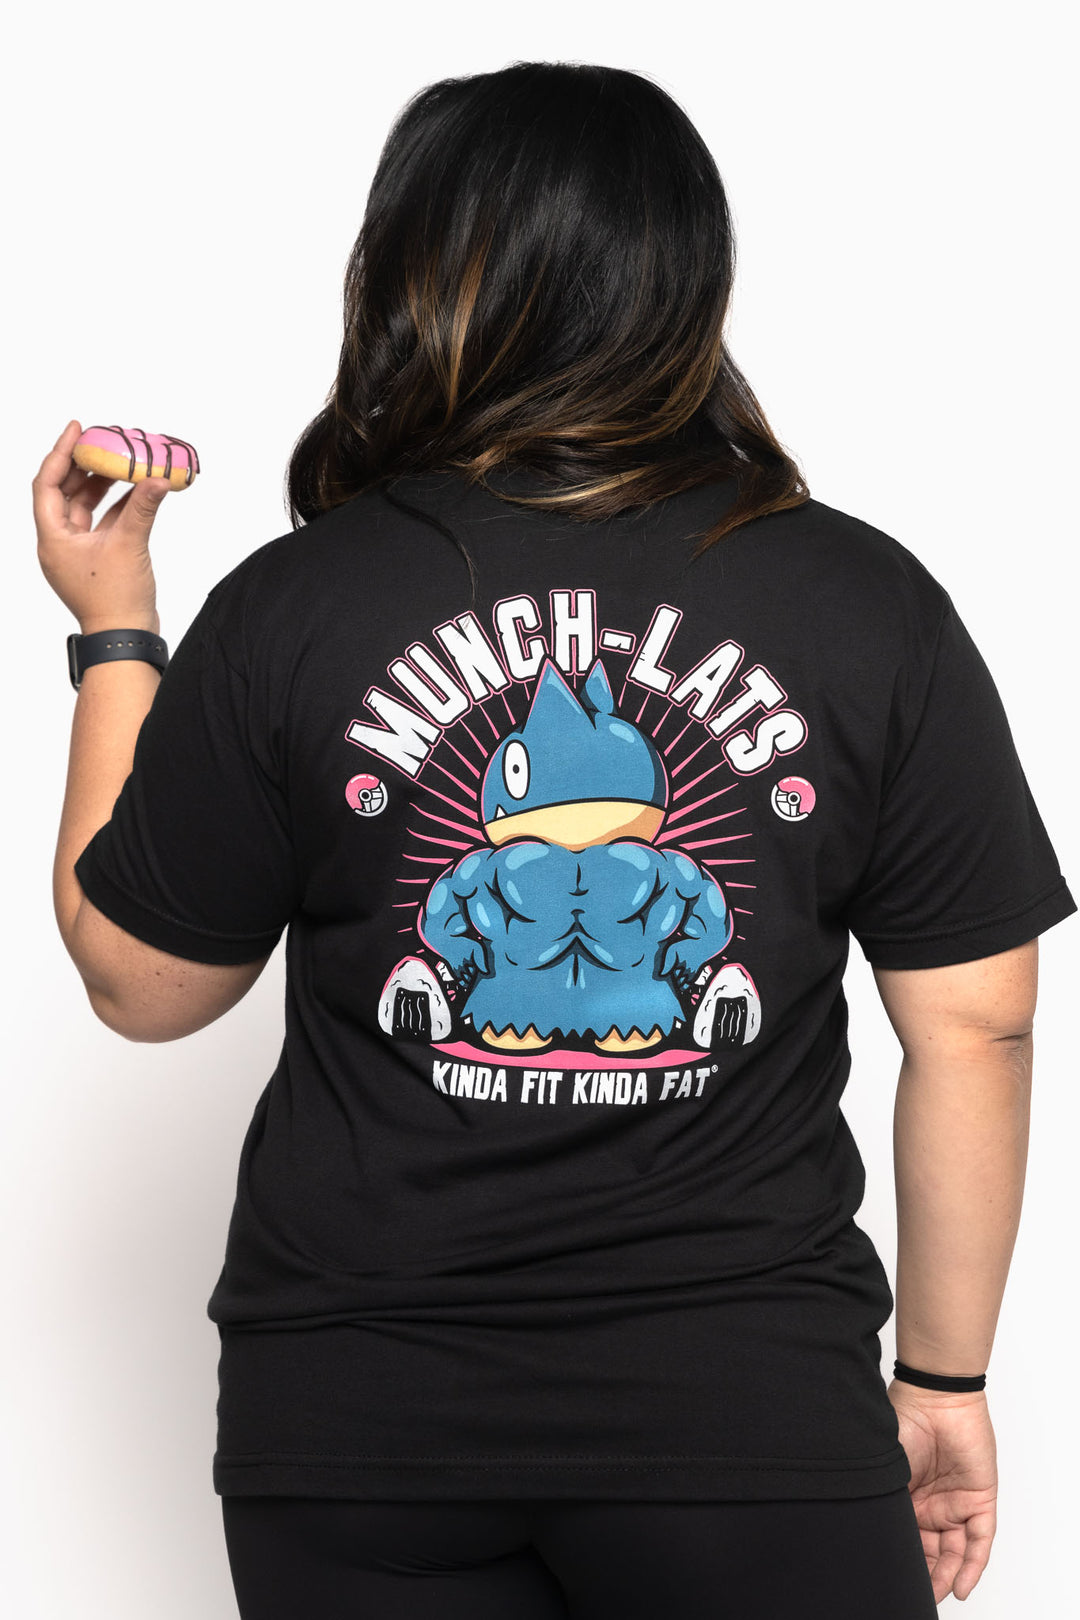 Munch-Lats Shirt